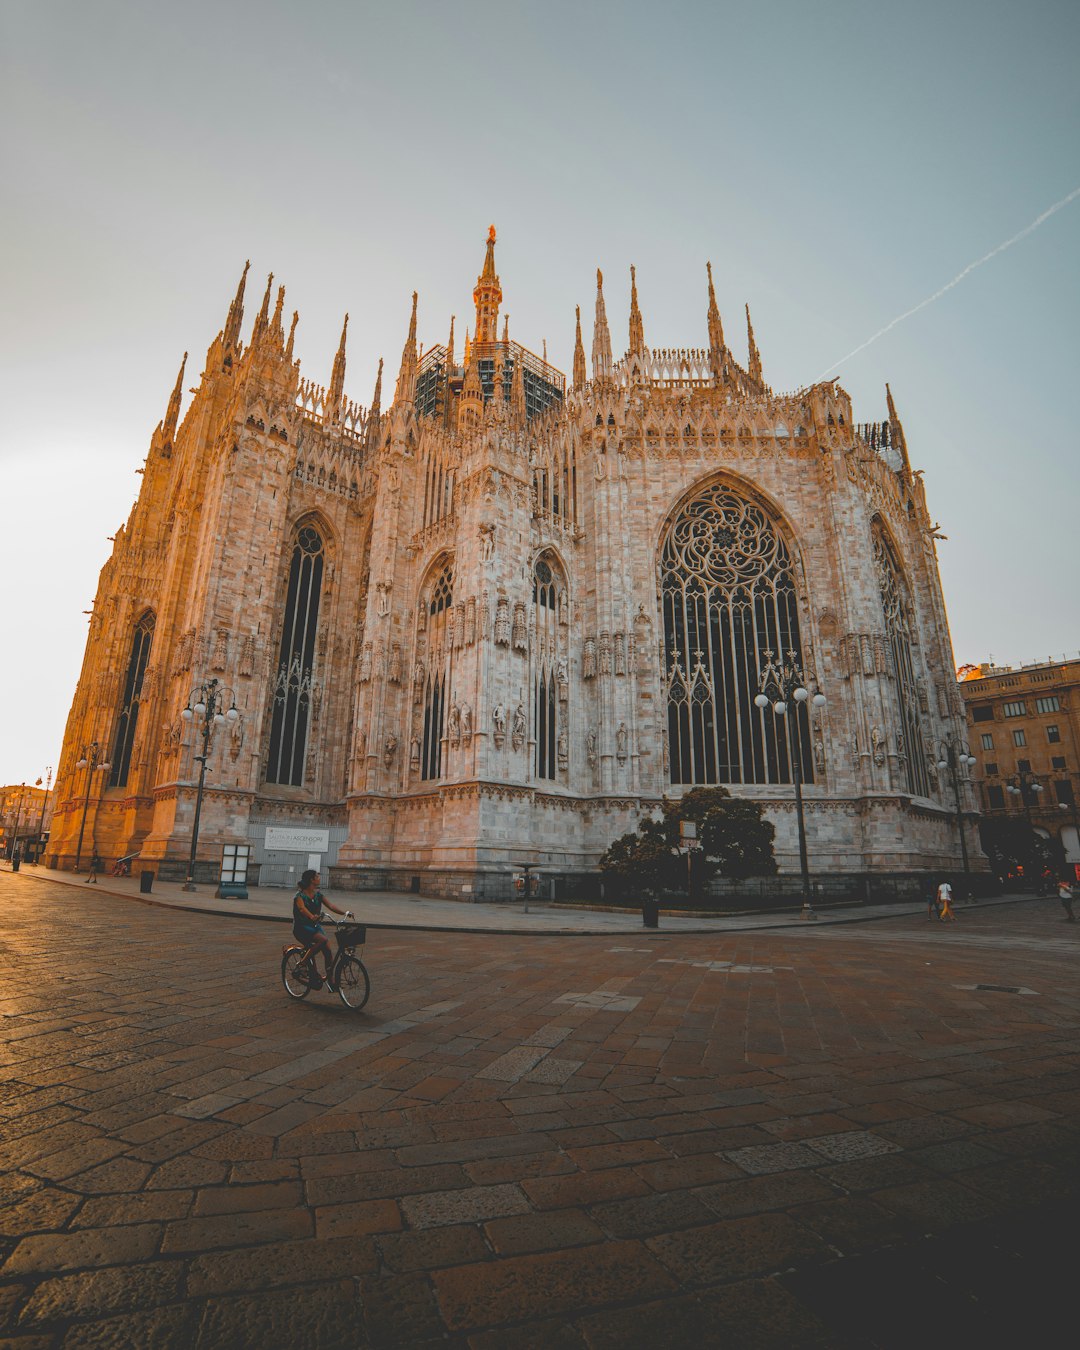 Landmark photo spot Duomo di Milano Italy Cathedral of Como